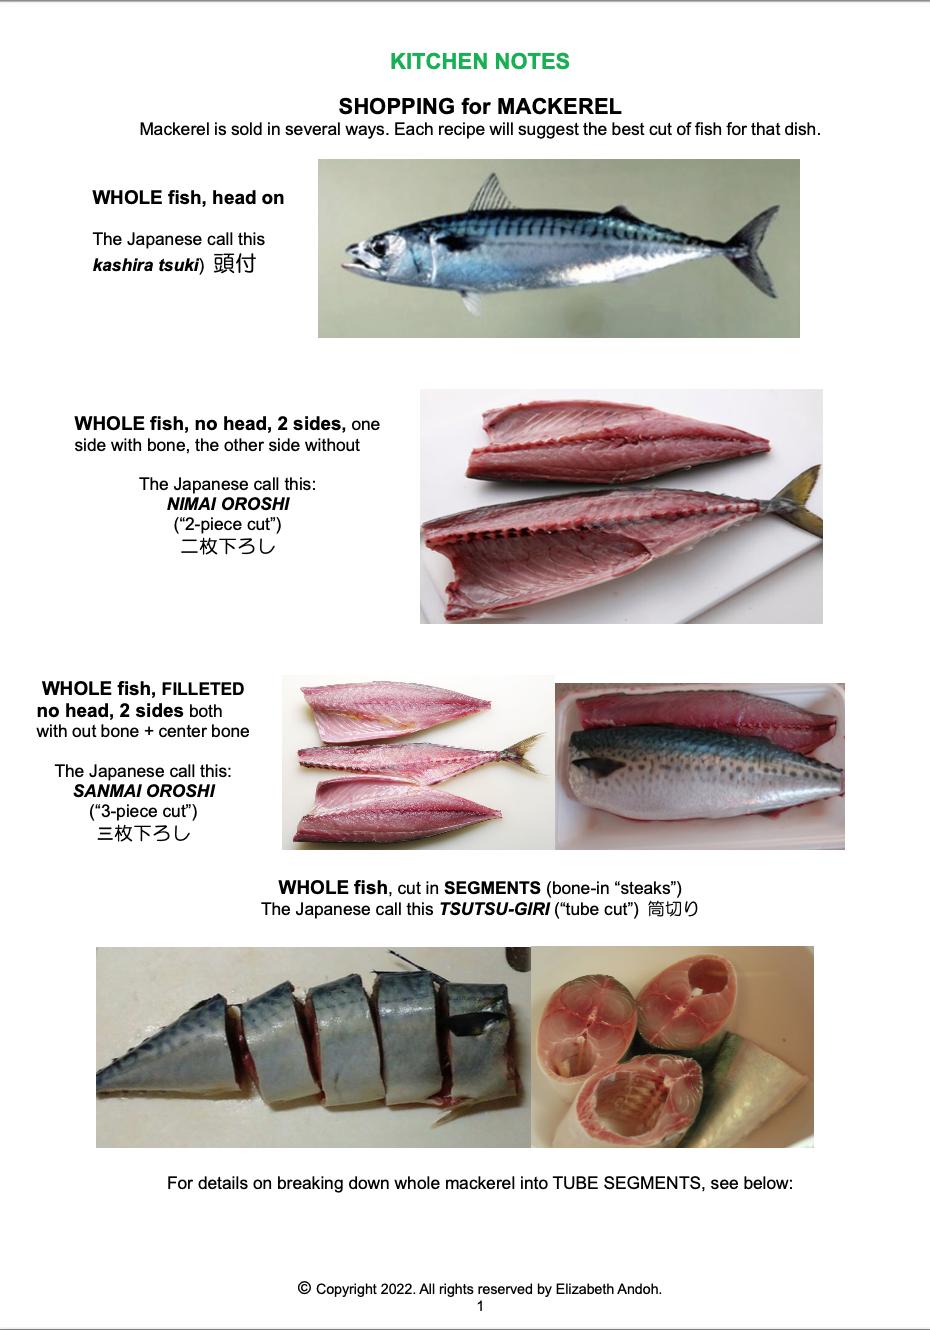 mackerel fish